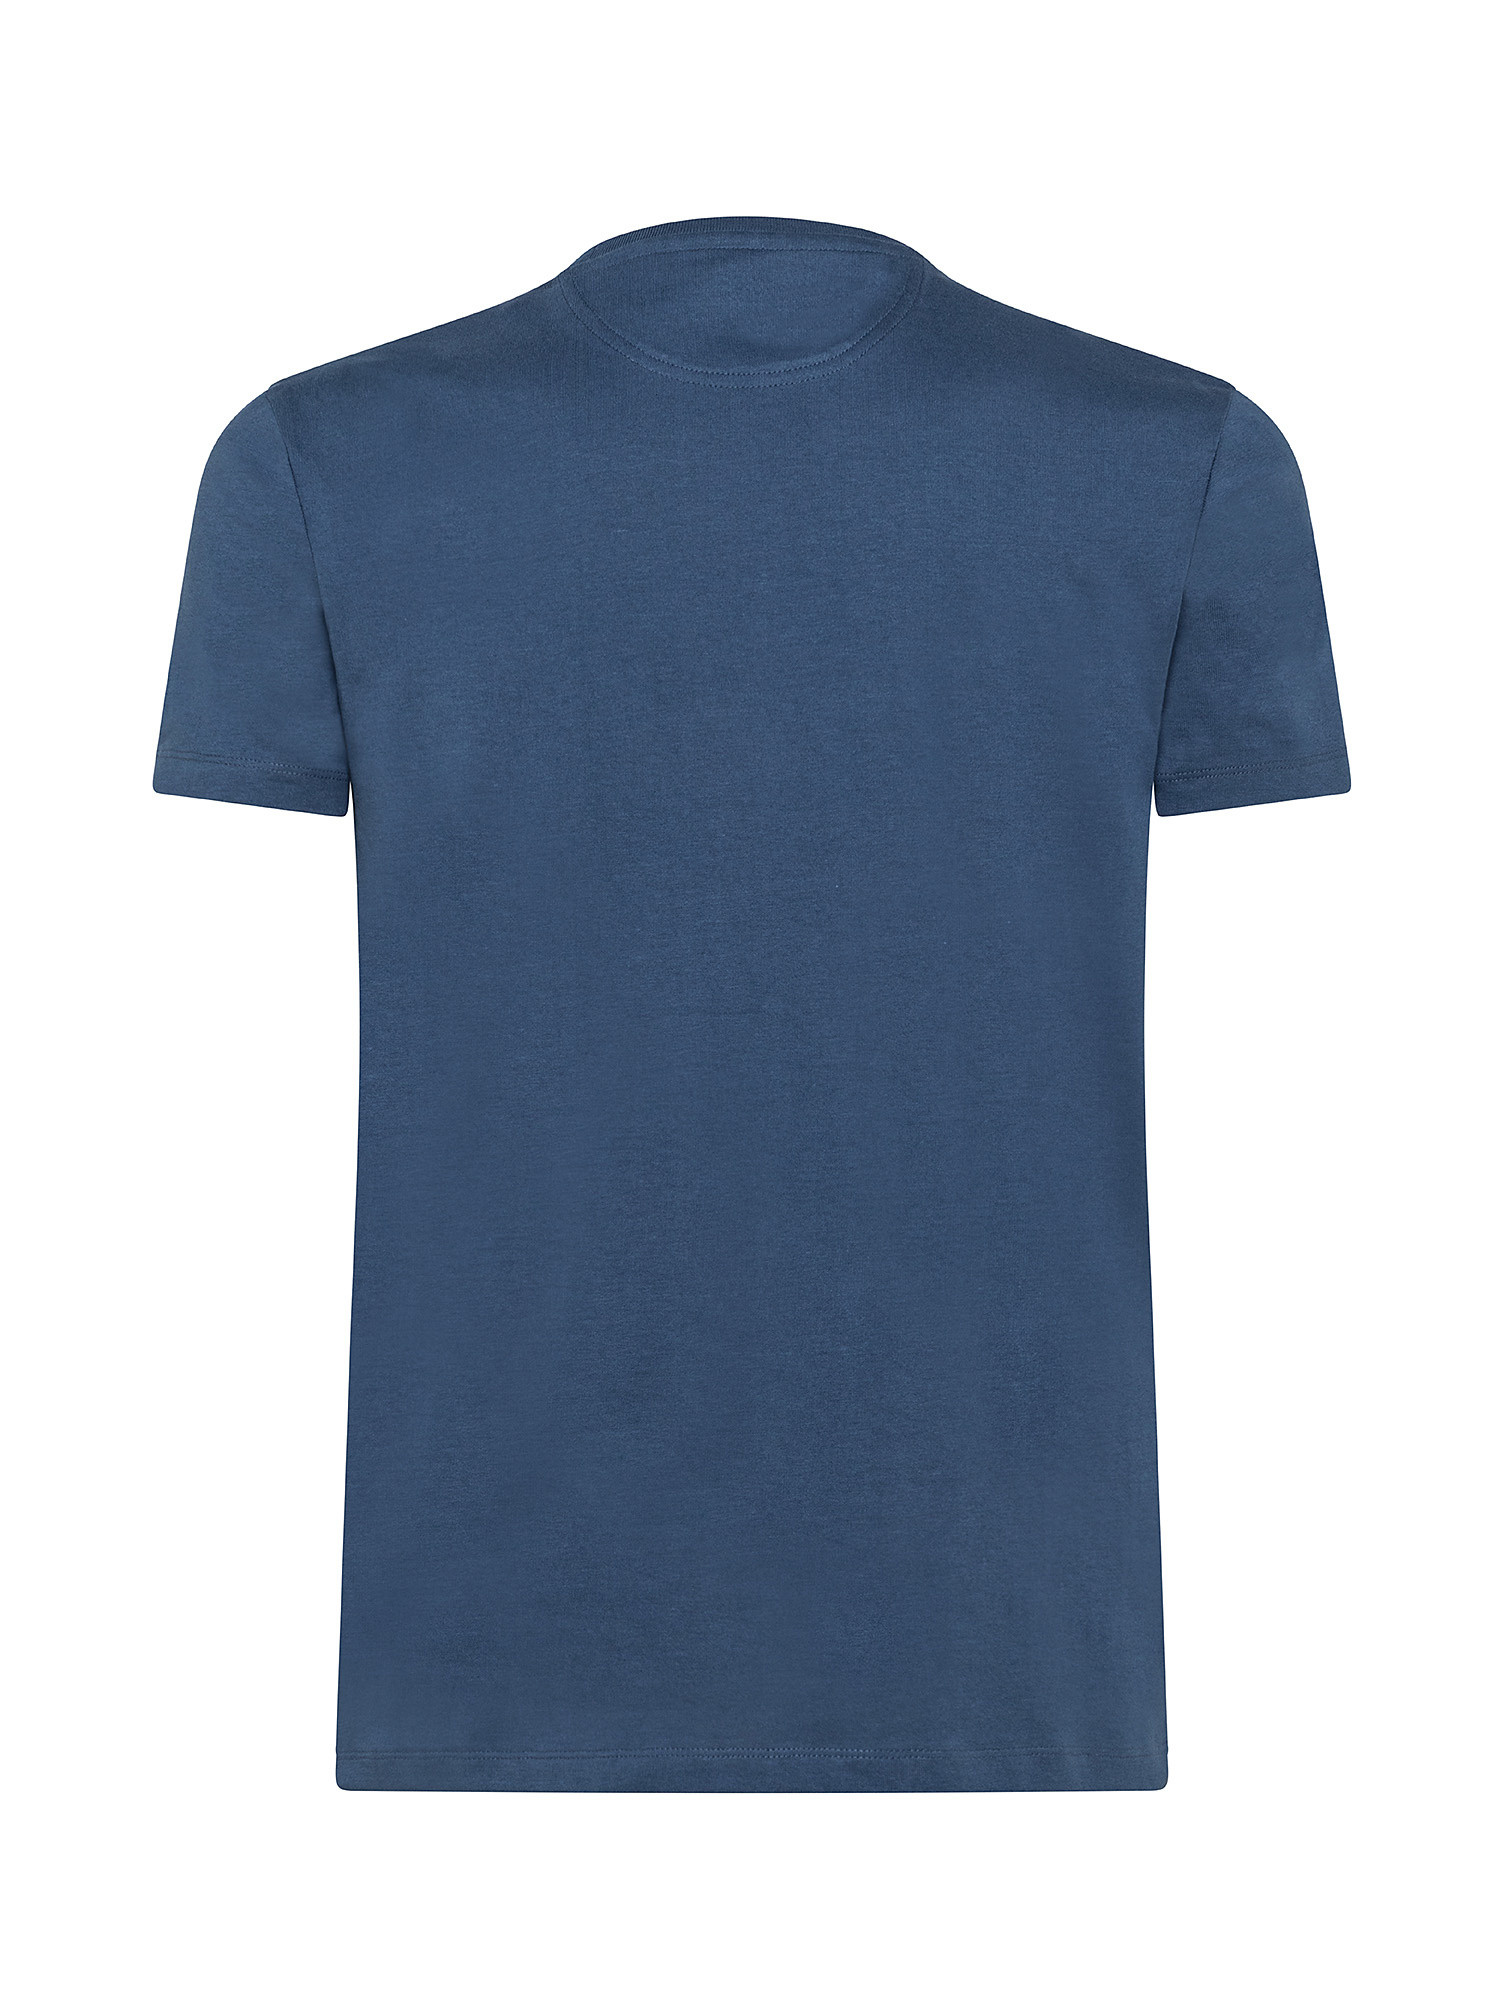 Dunstan River Men's T-Shirt, Blue, large image number 1